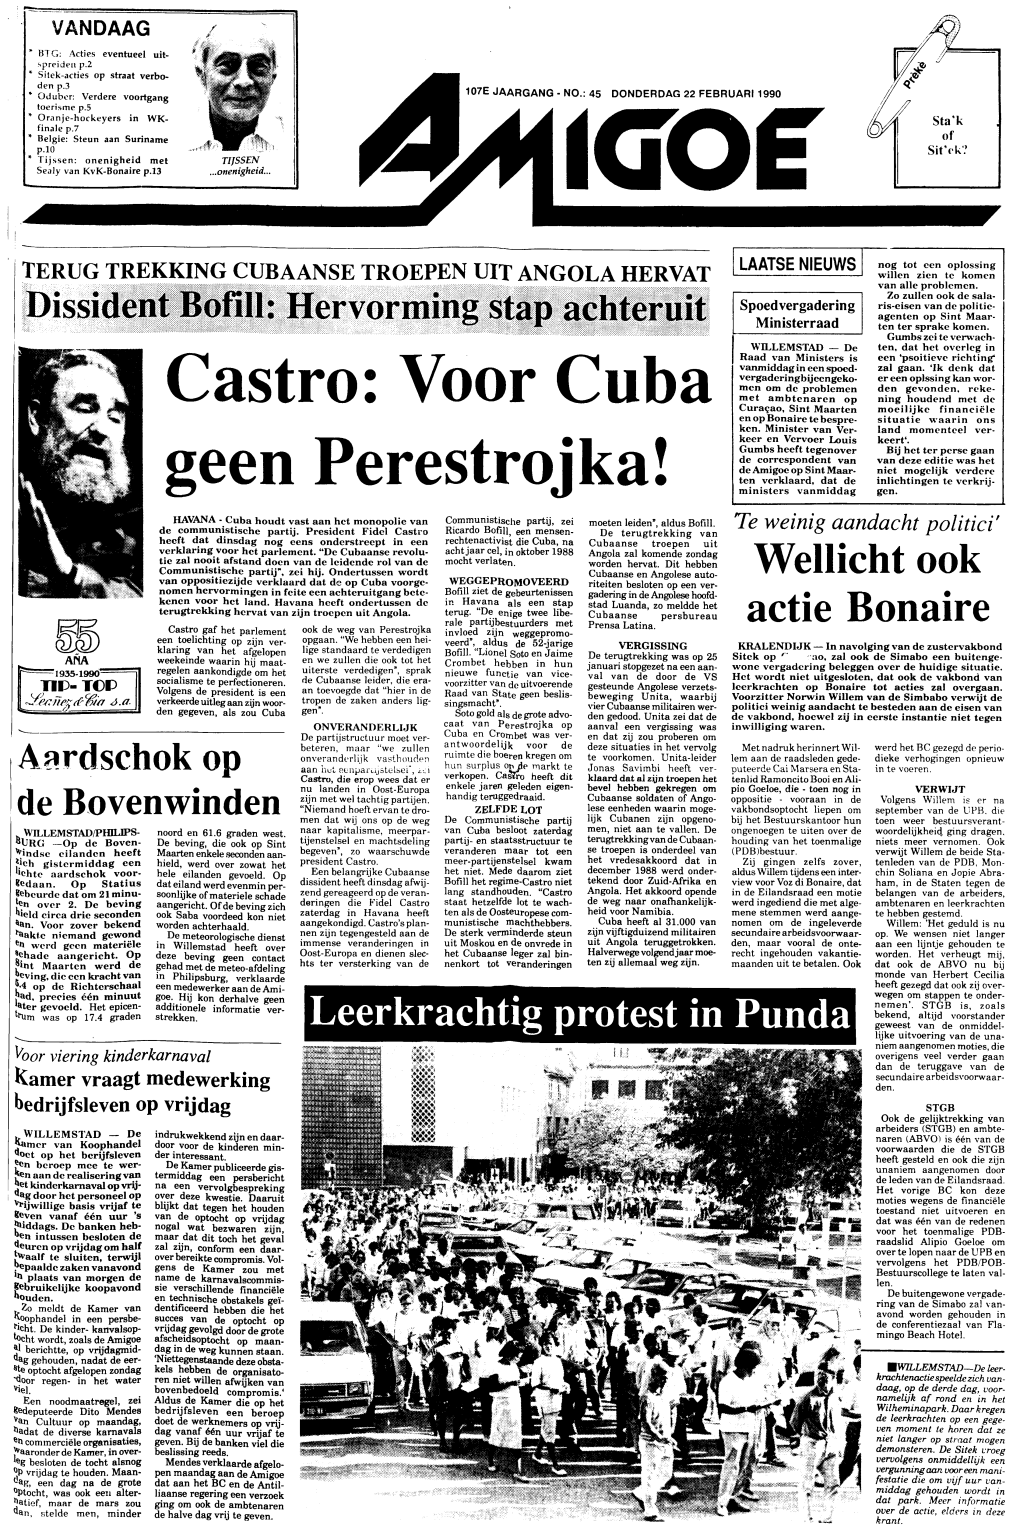 Actie Bonaire Castro Gaf Het Parlement Ook De Weg Van Perestrojka Invloed Zijn Weggepromo- Een Toelichting Op Zijn Ver- Opgaan